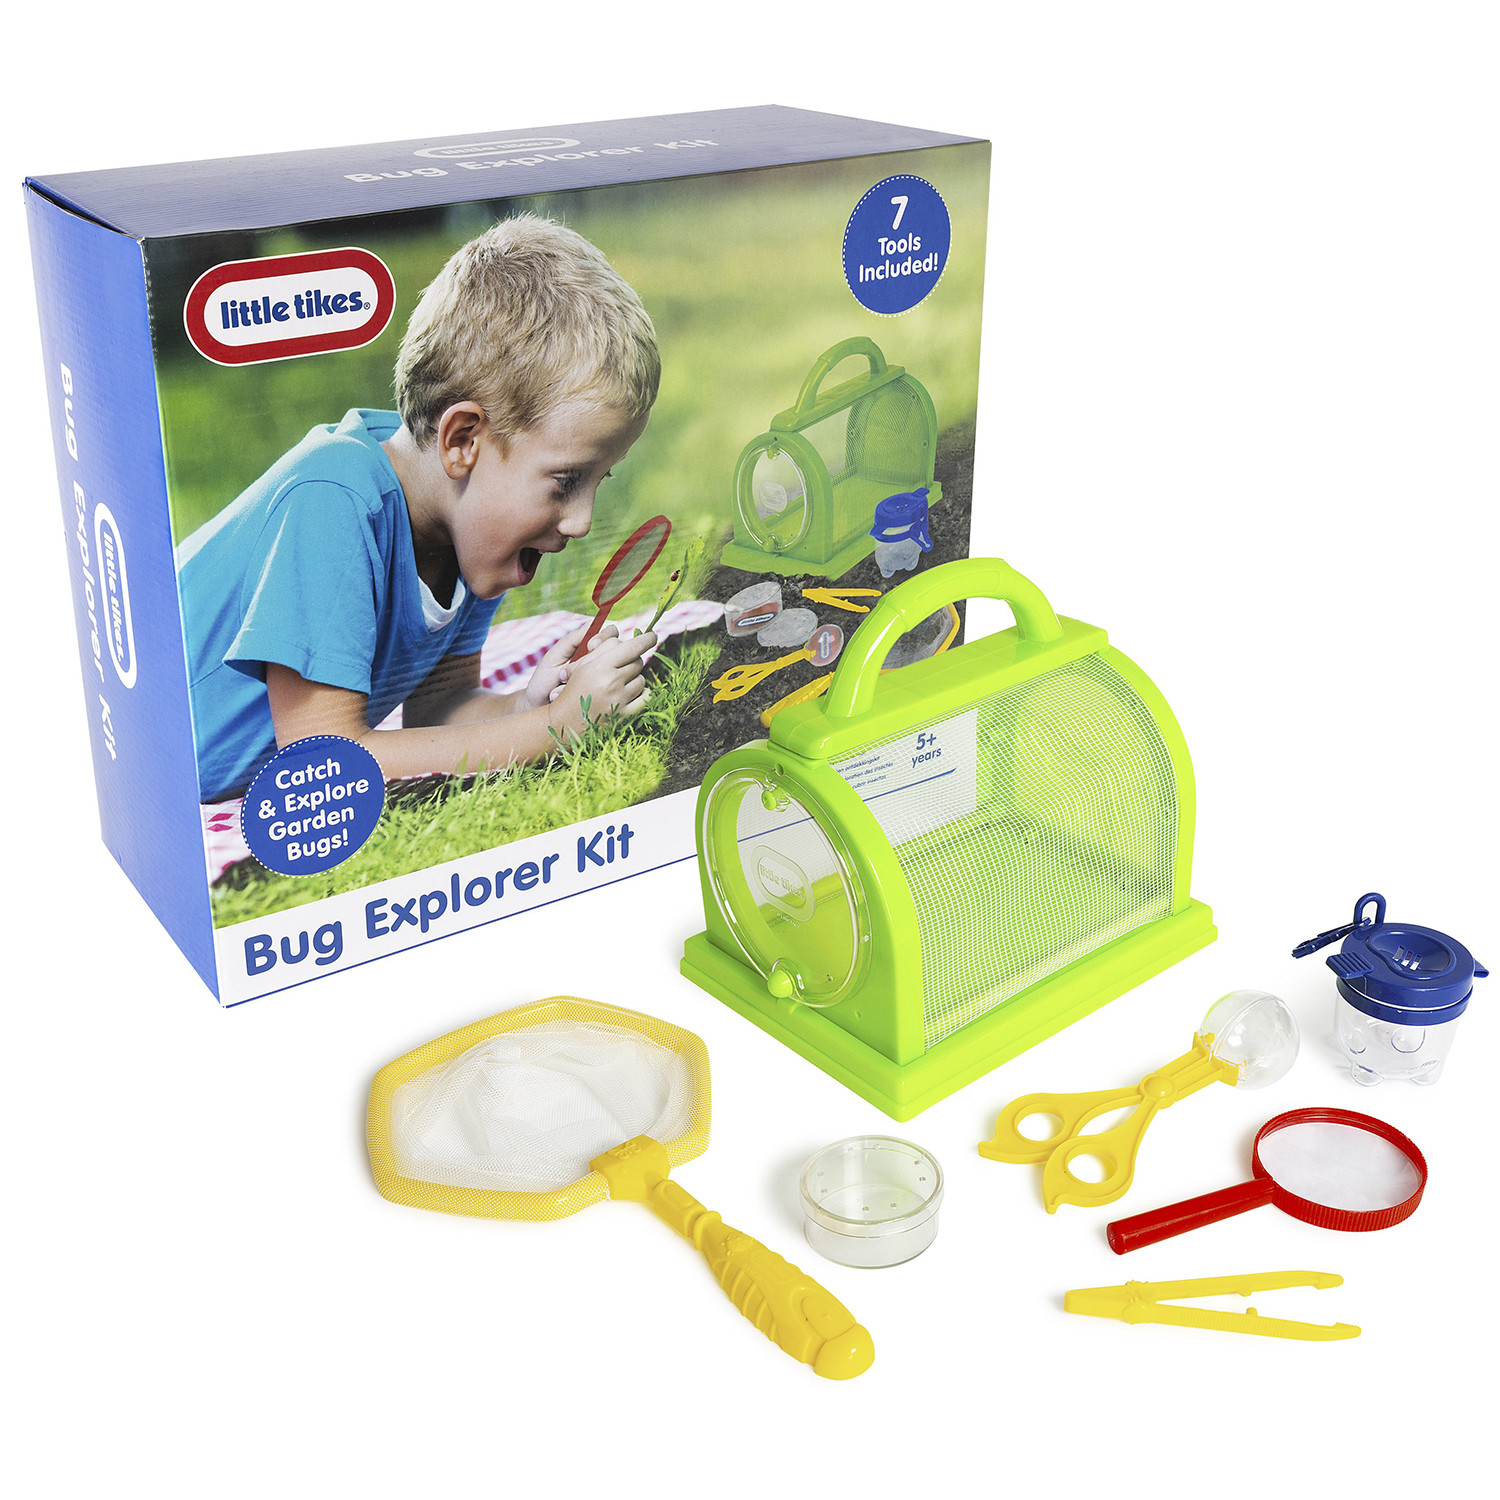 Little Tikes Bug Explorer Kit Image